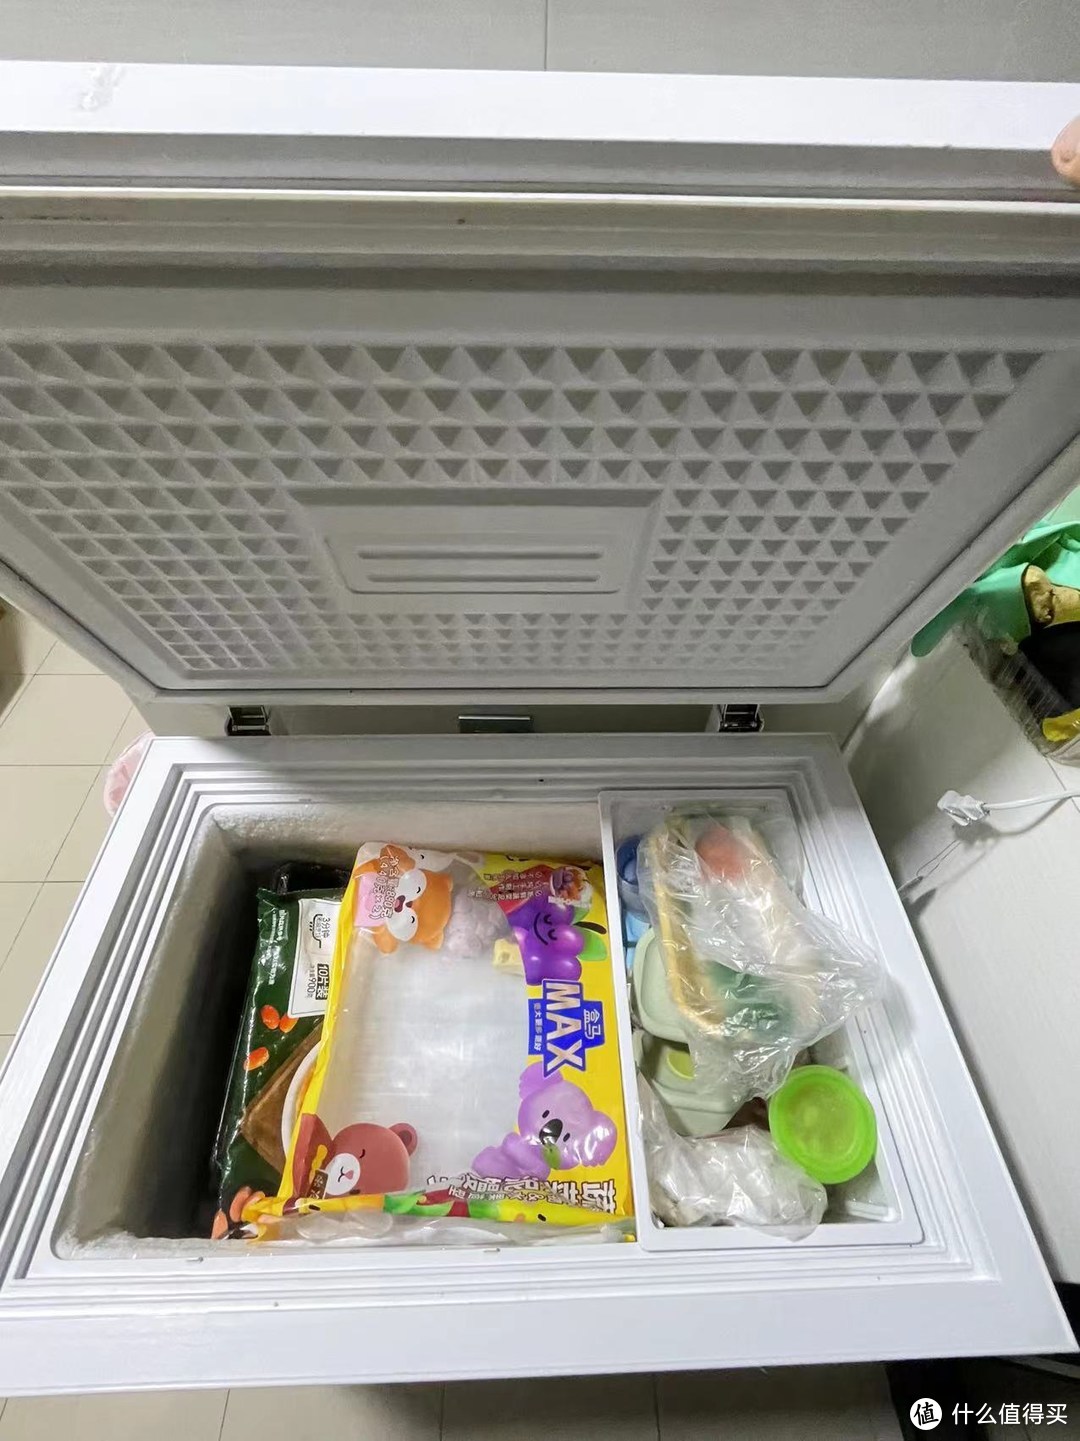 为食材提供了充足的储存空间 - 荣事达冰柜135L